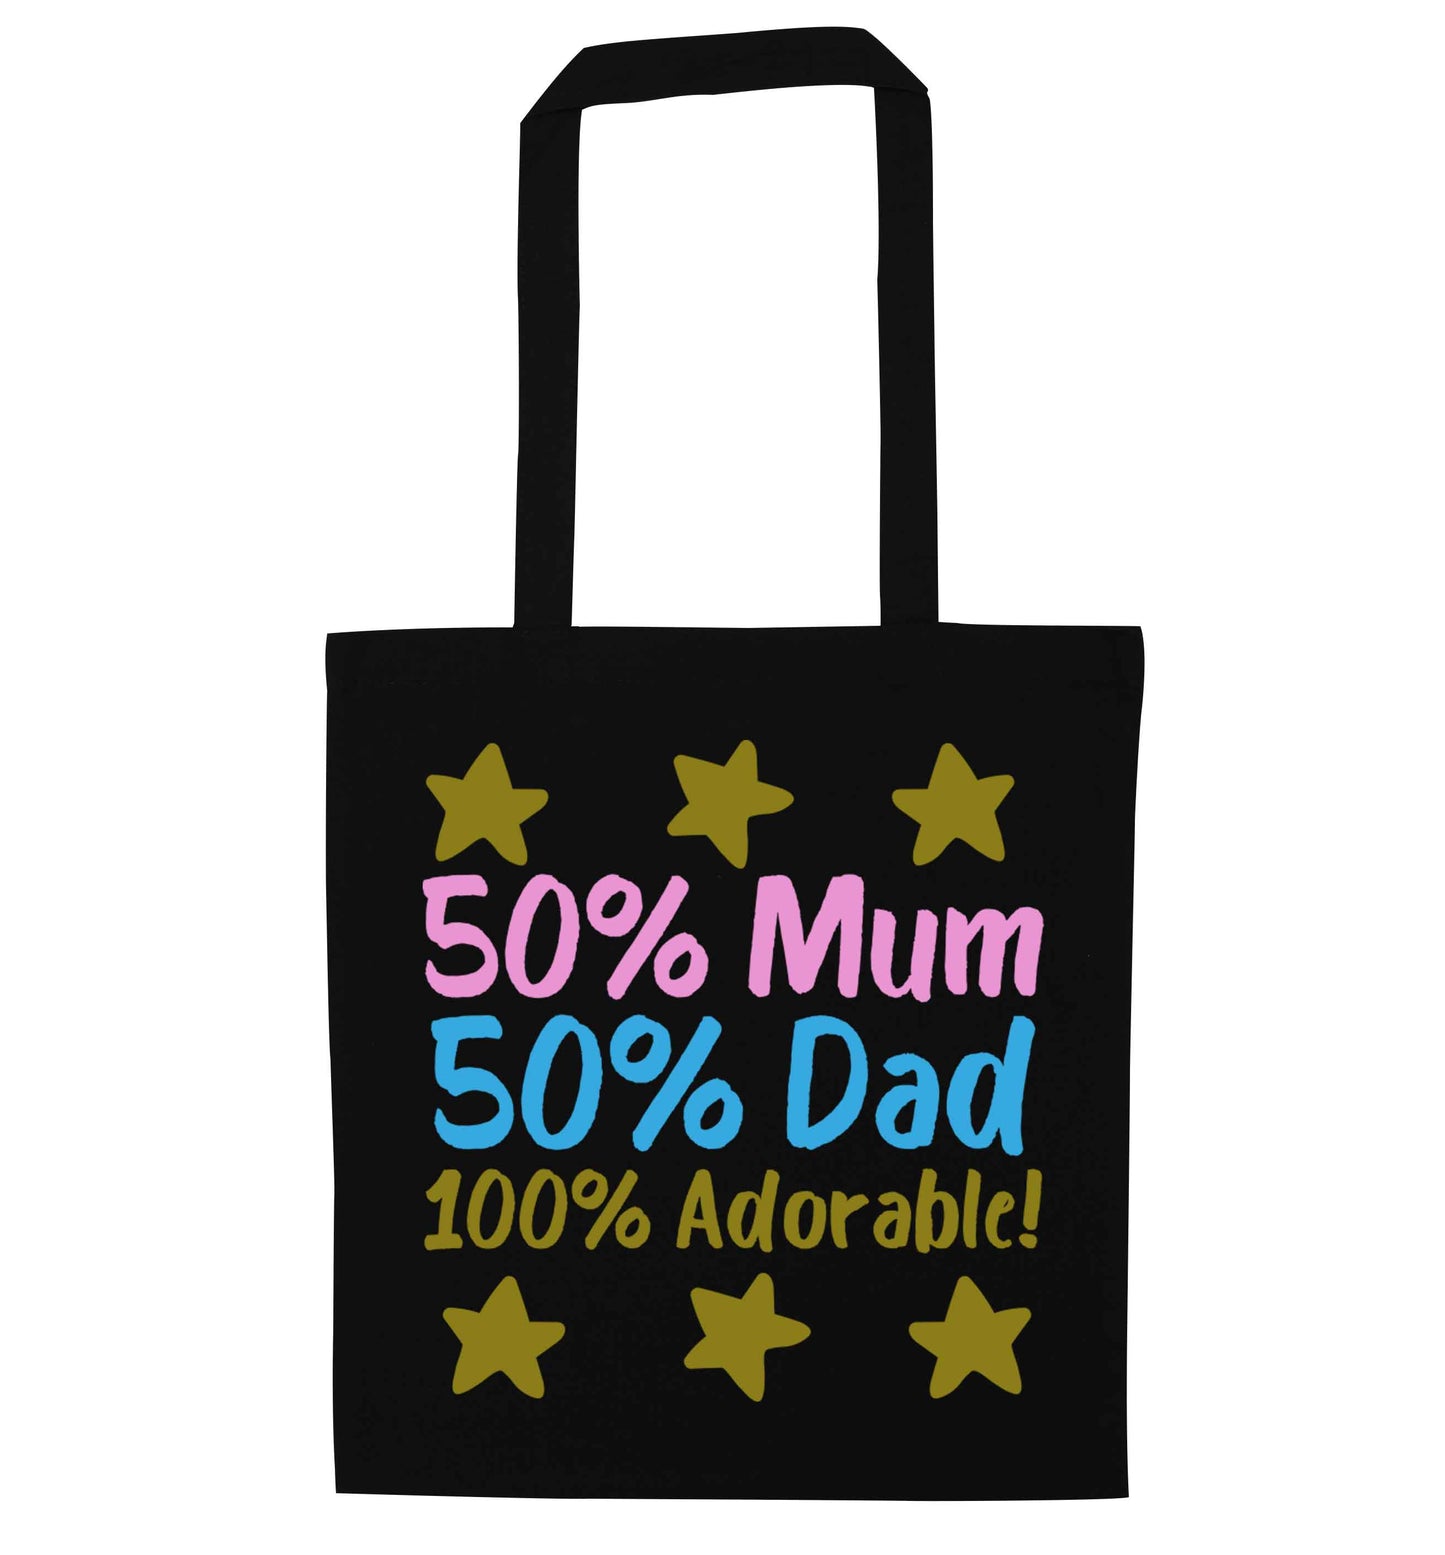 50% mum 50% dad 100% adorable black tote bag